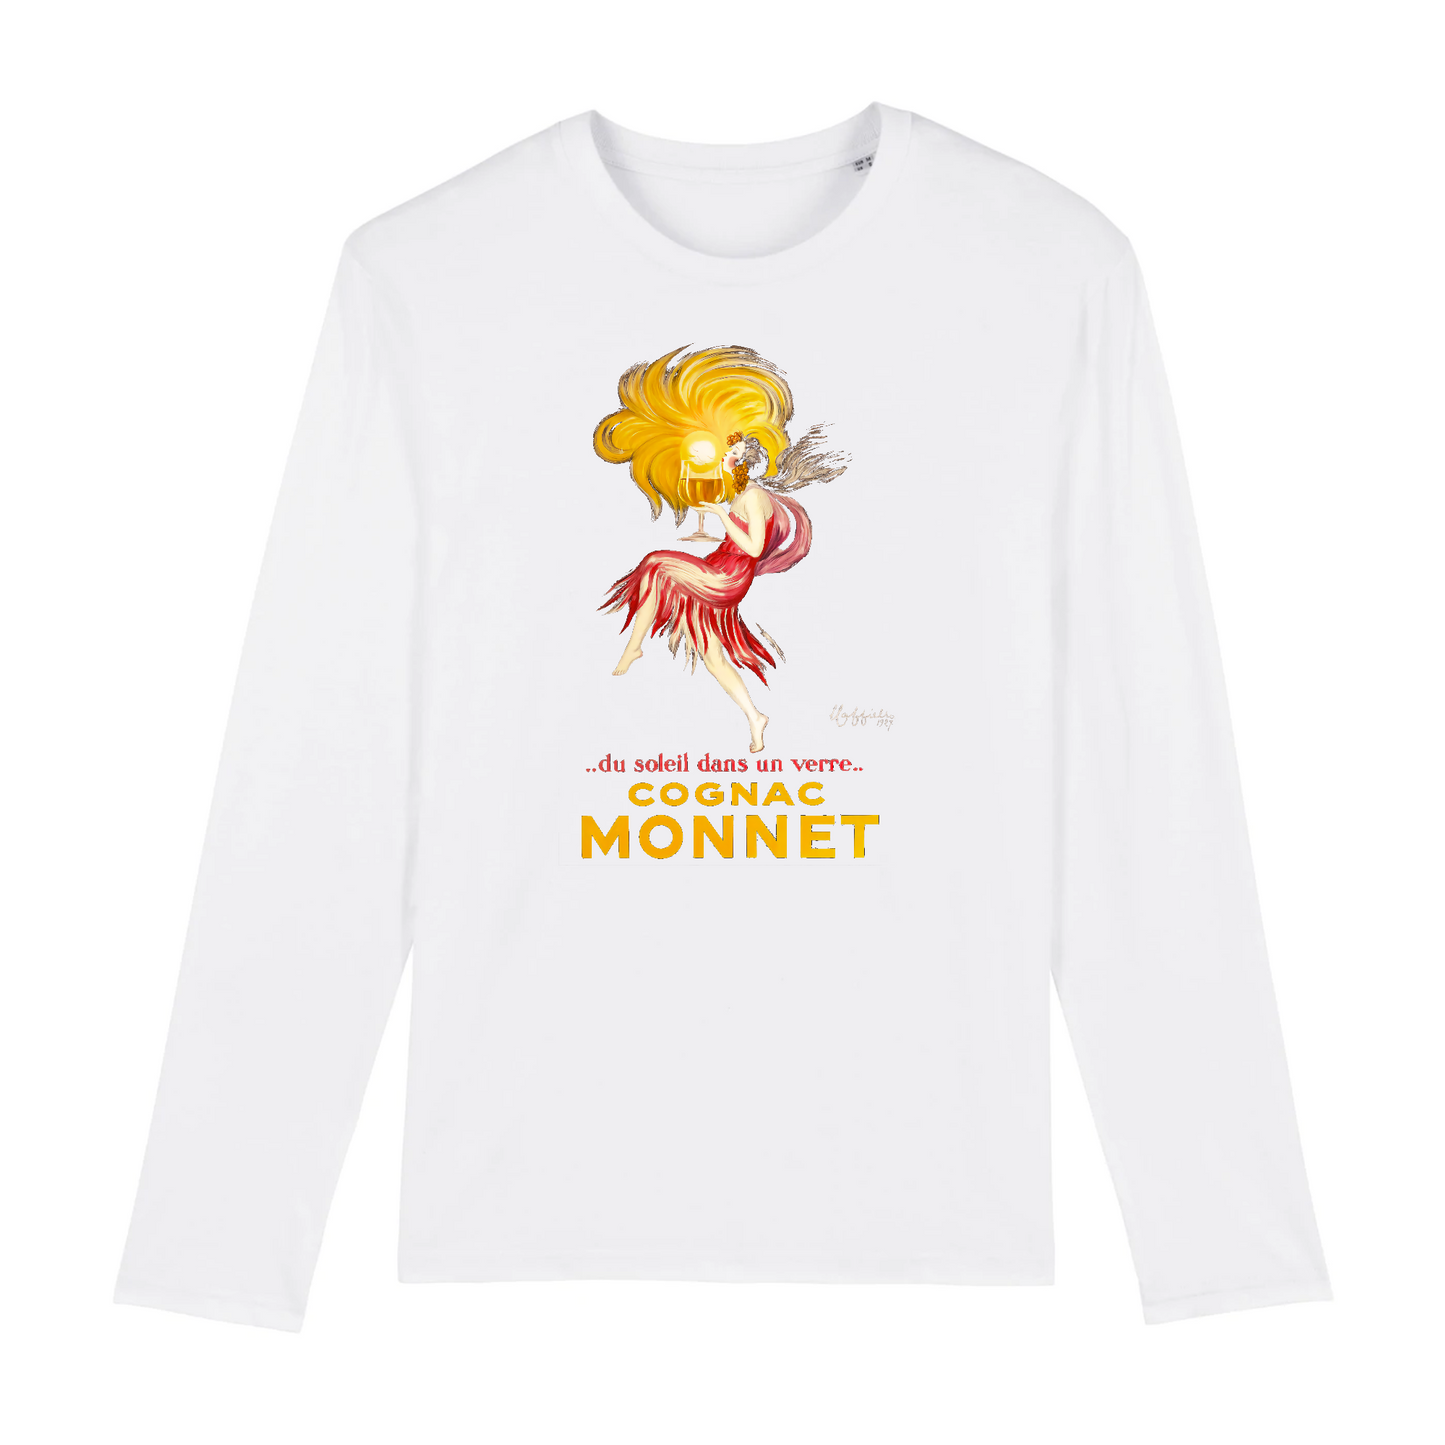 Cognac Monnet by Leonetto Capiello, 1927 - Organic Cotton Long-Sleeve T-Shirt